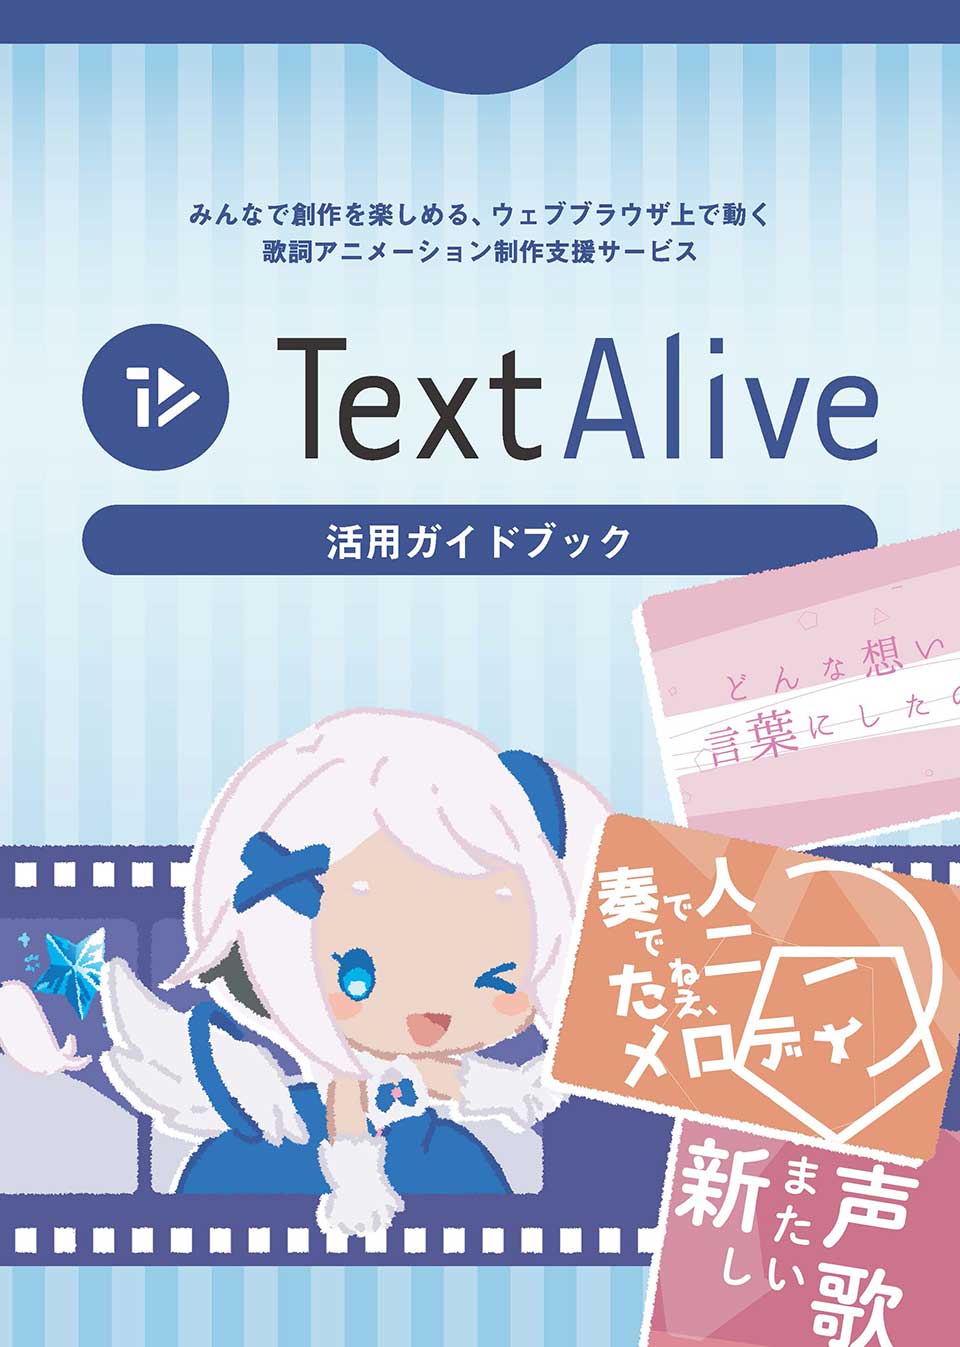 TextAlive 活用ガイド